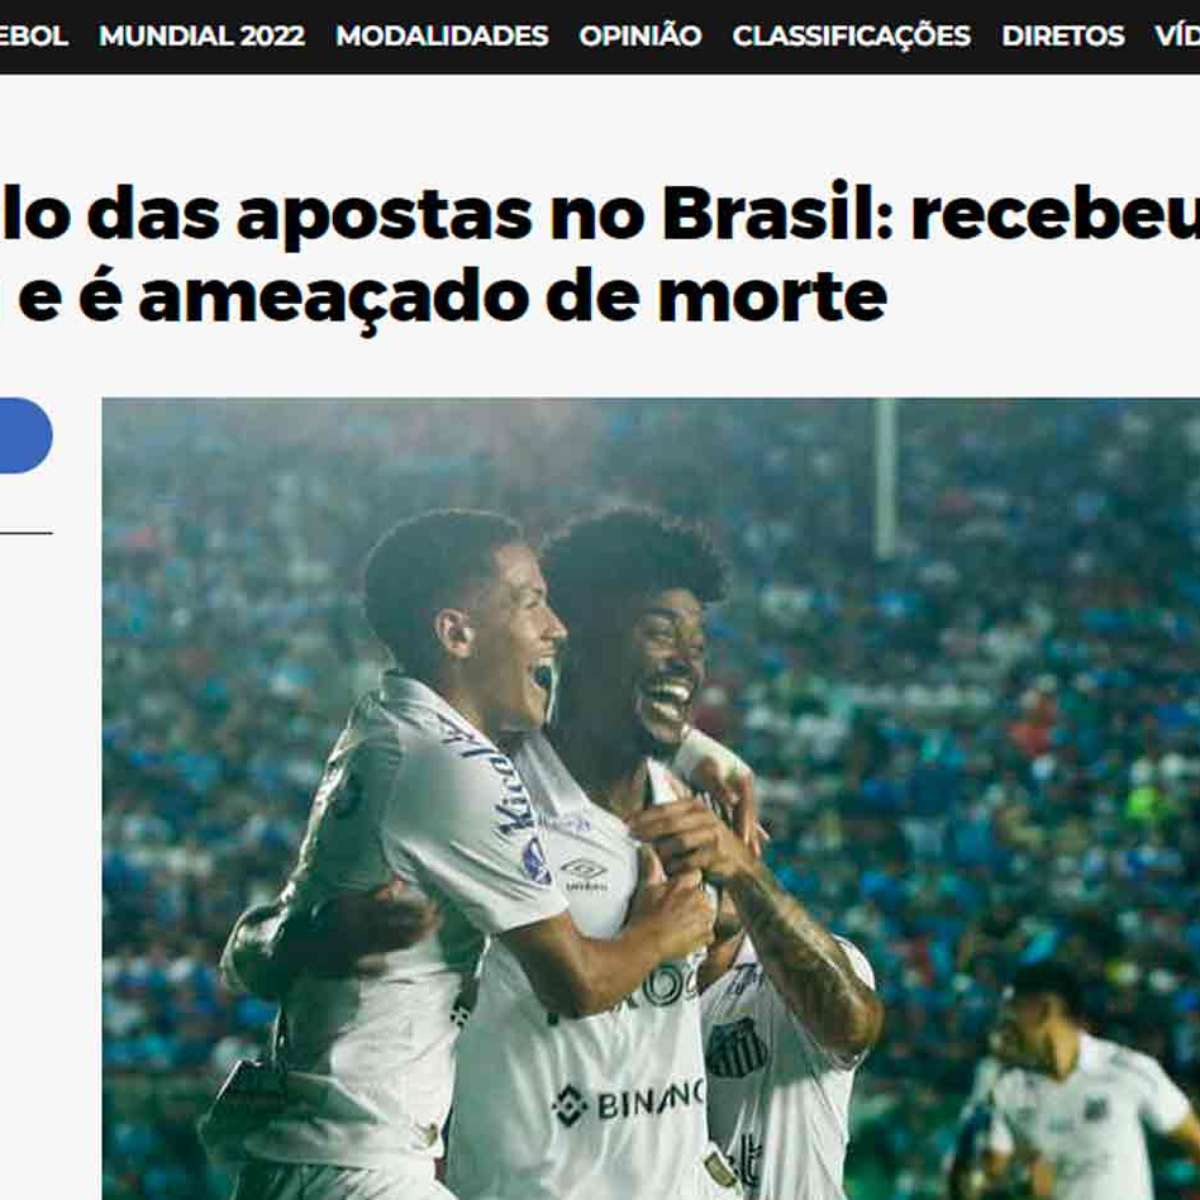 Entenda o escândalo da manipulação de jogos do futebol brasileiro